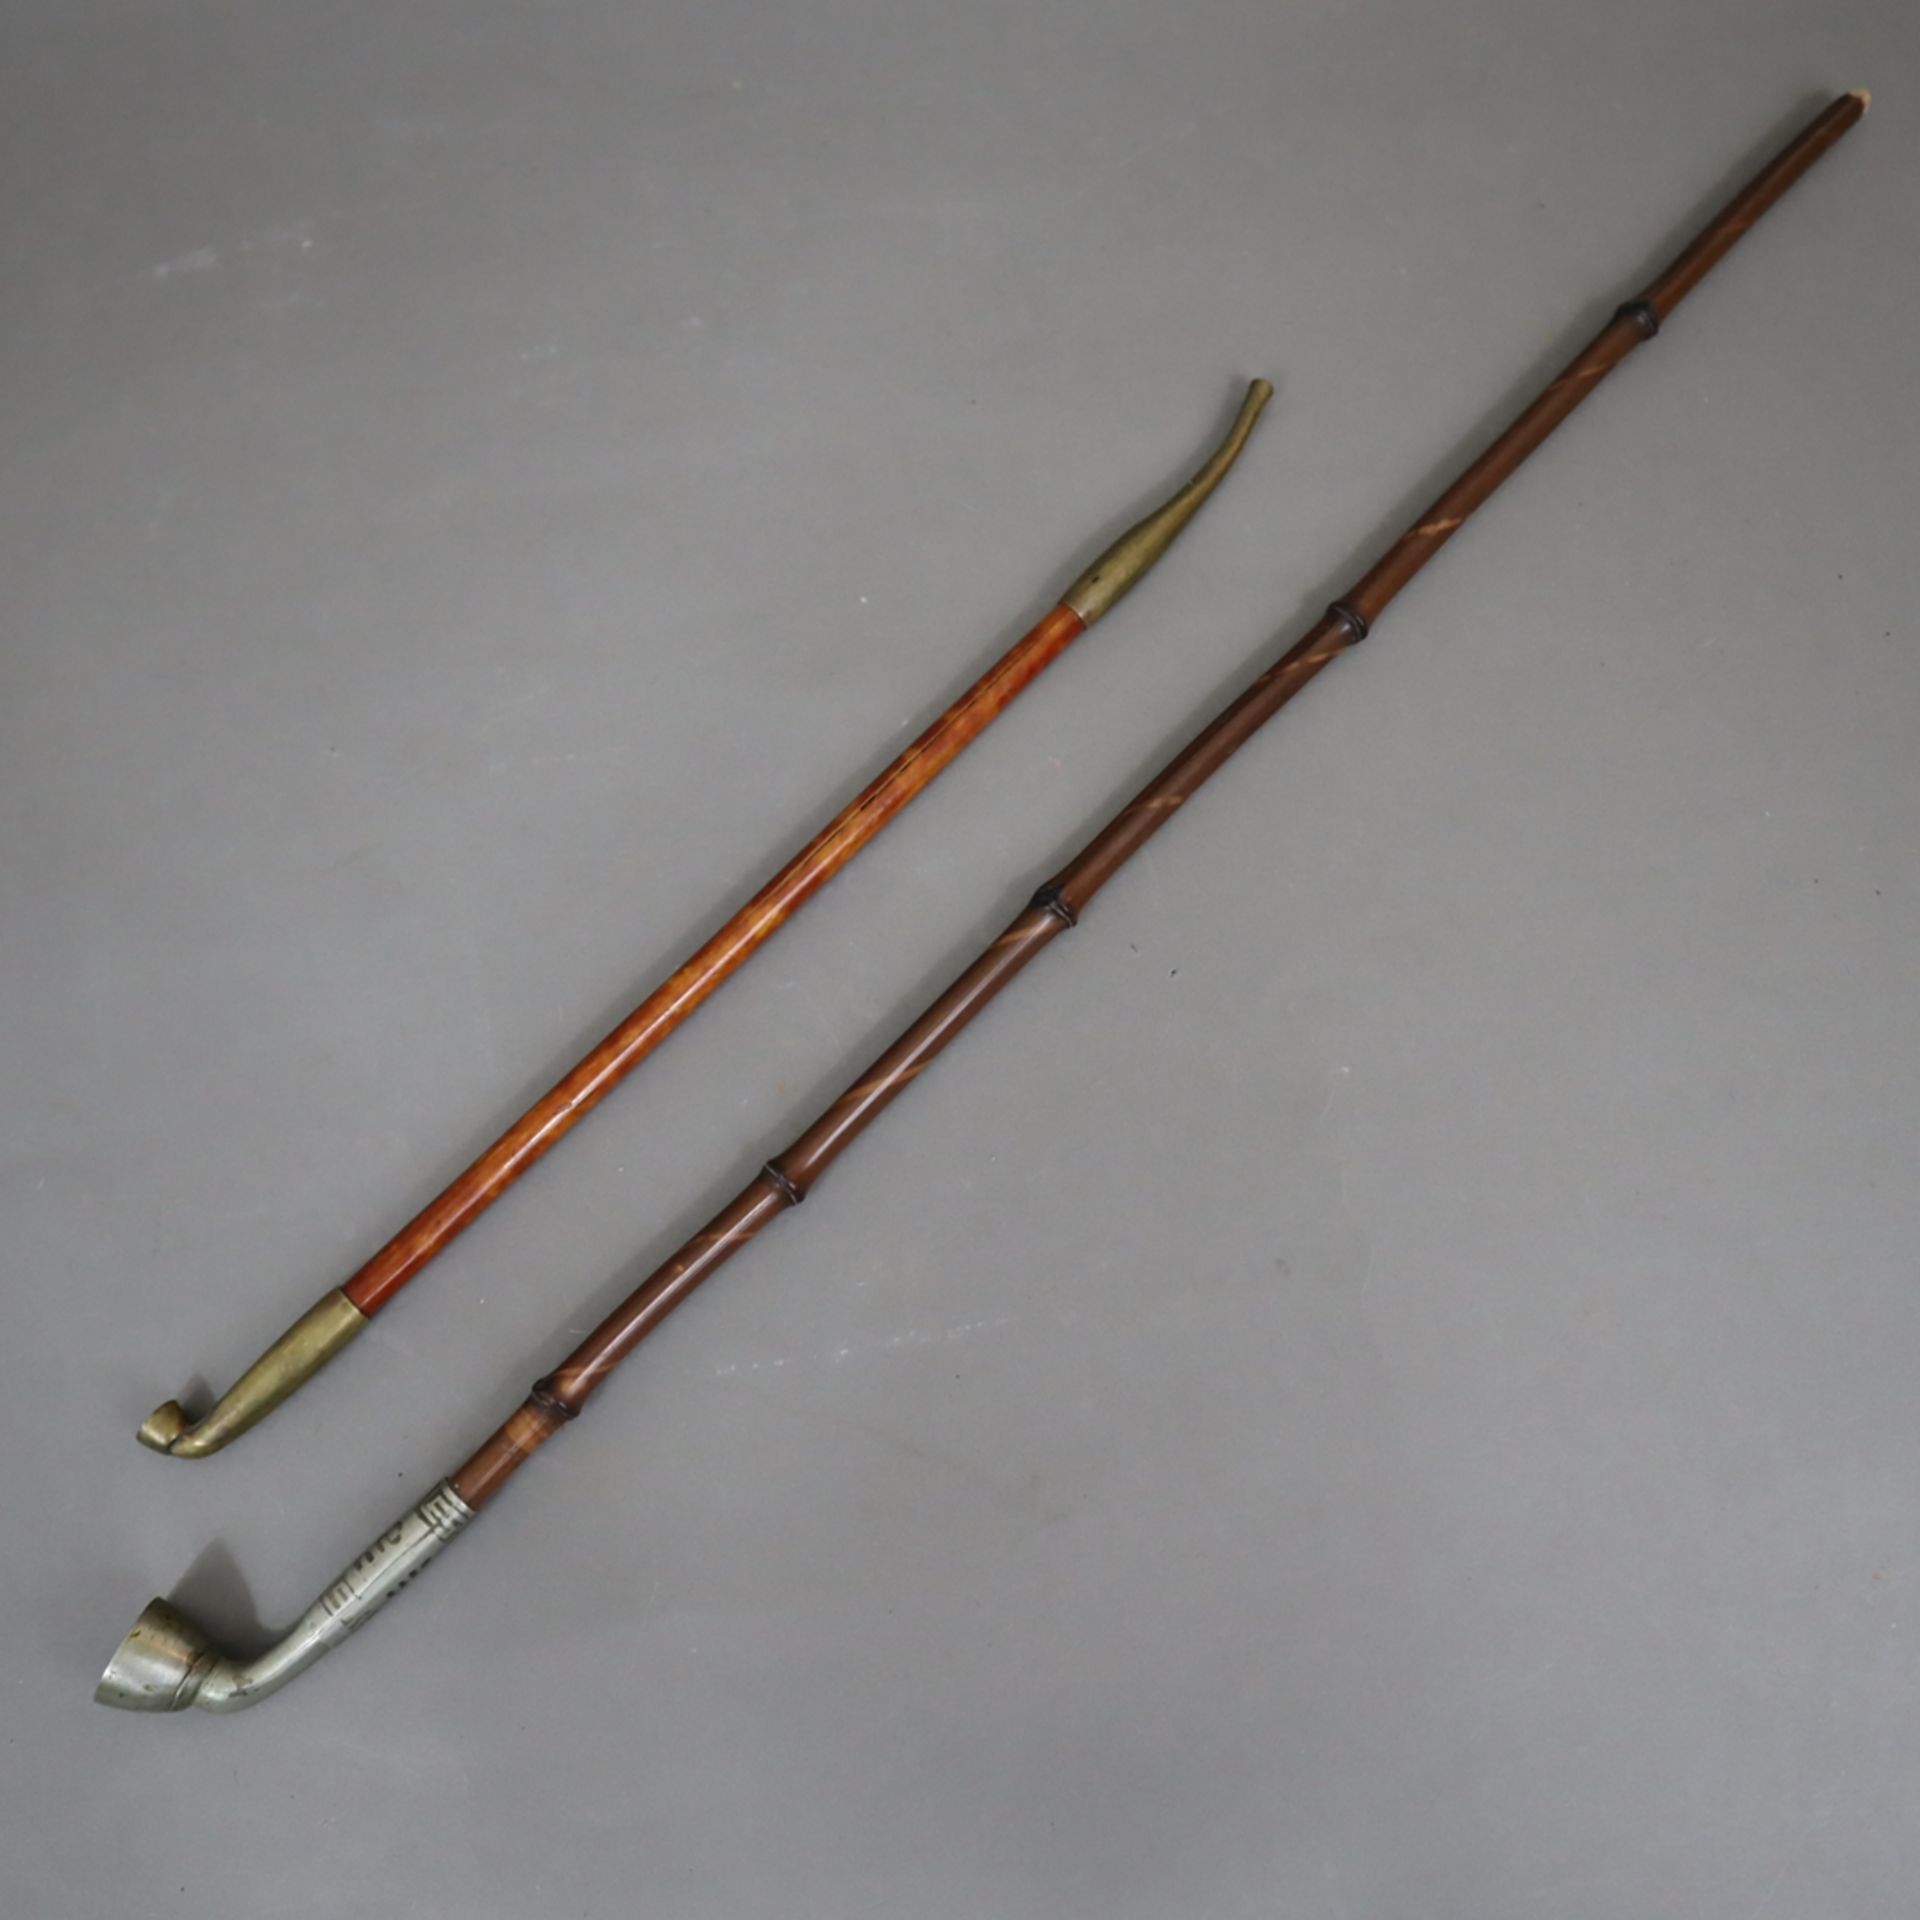 Zwei Opiumpfeifen - China, Messing- bzw. Weißmetallkopf, L. jeweils ca.33/53 cm, Gebrauchsspuren, 1